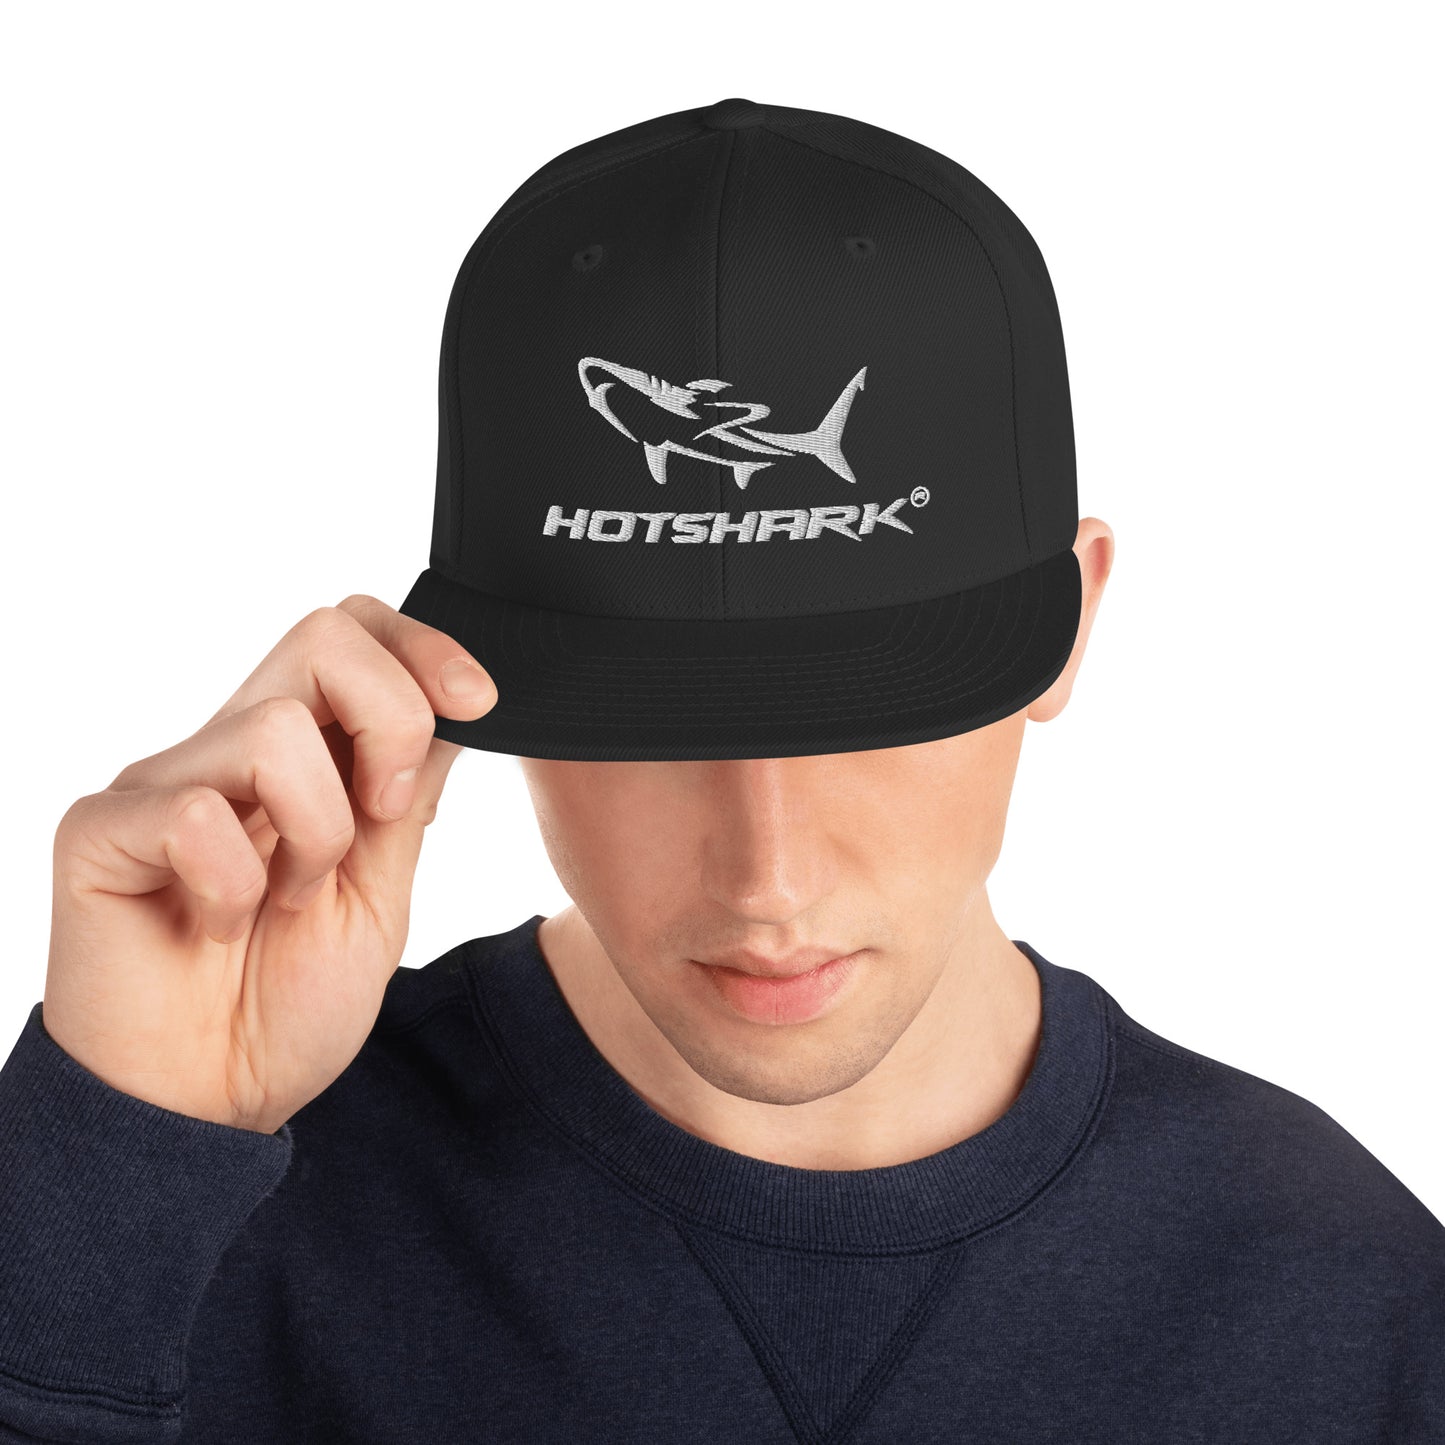 HotShark snapback cap